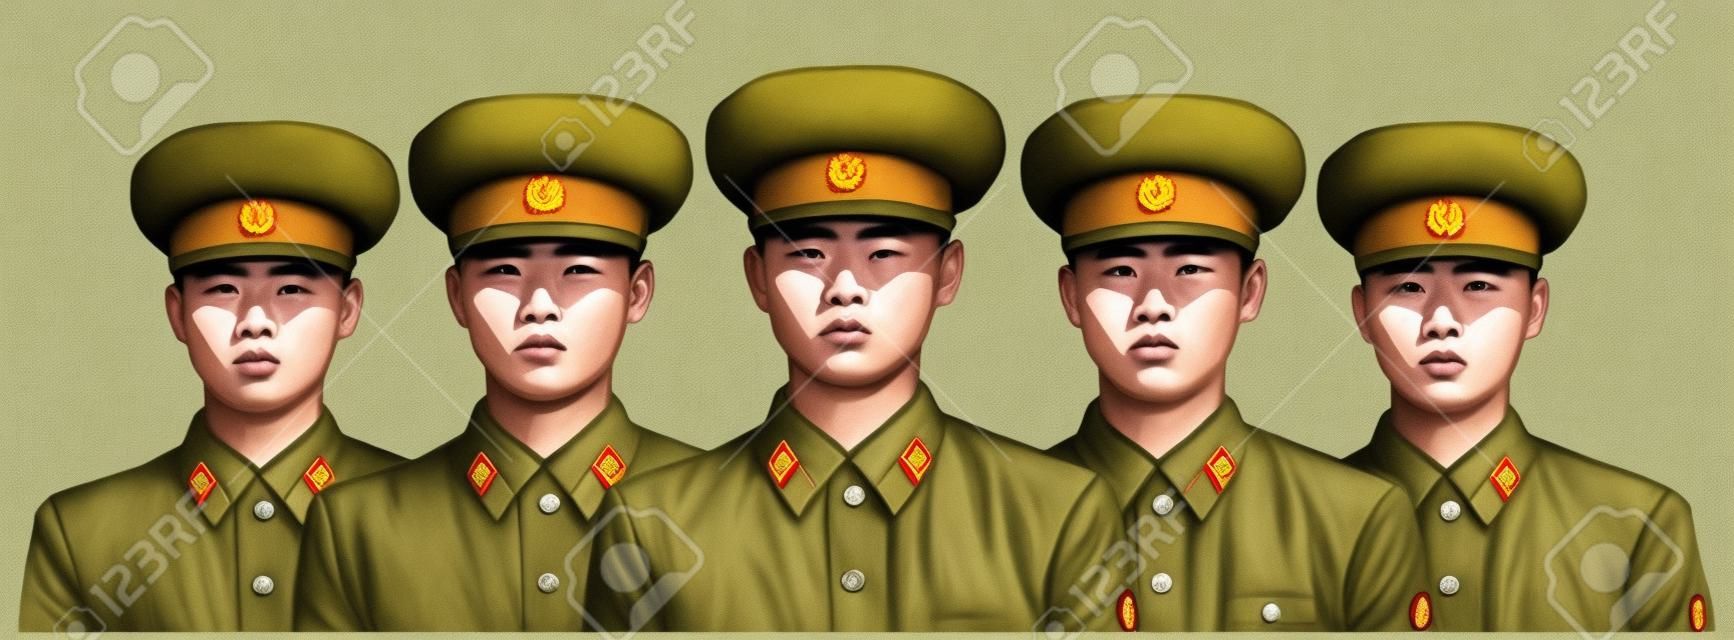 身穿制服的北韓士兵的插圖